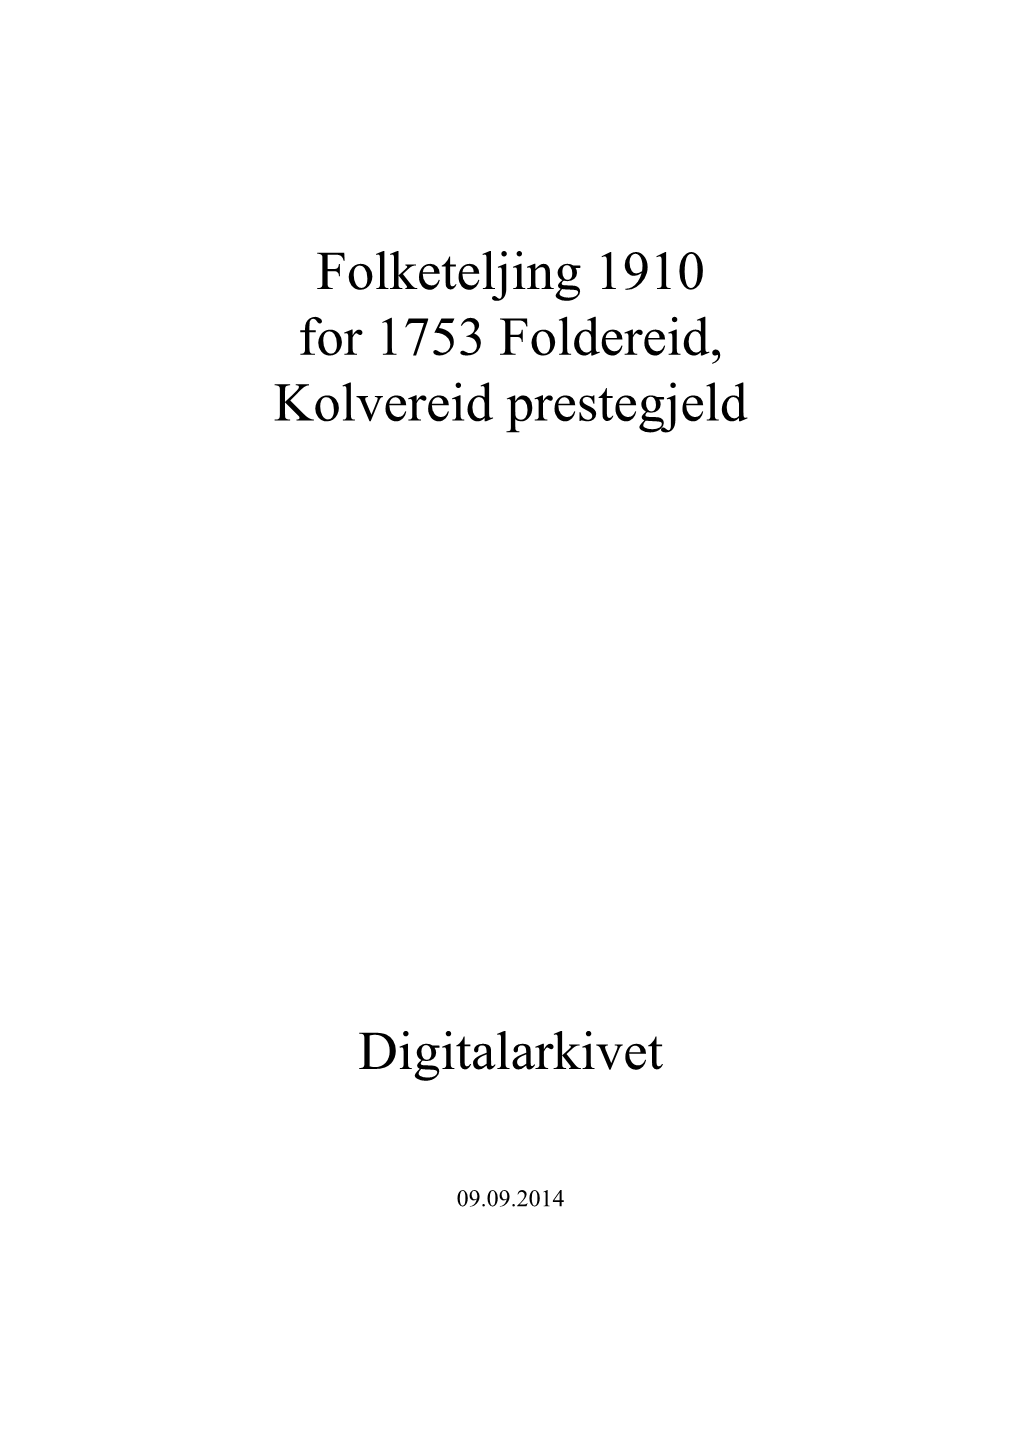 Folketeljing 1910 for 1753 Foldereid, Kolvereid Prestegjeld Digitalarkivet